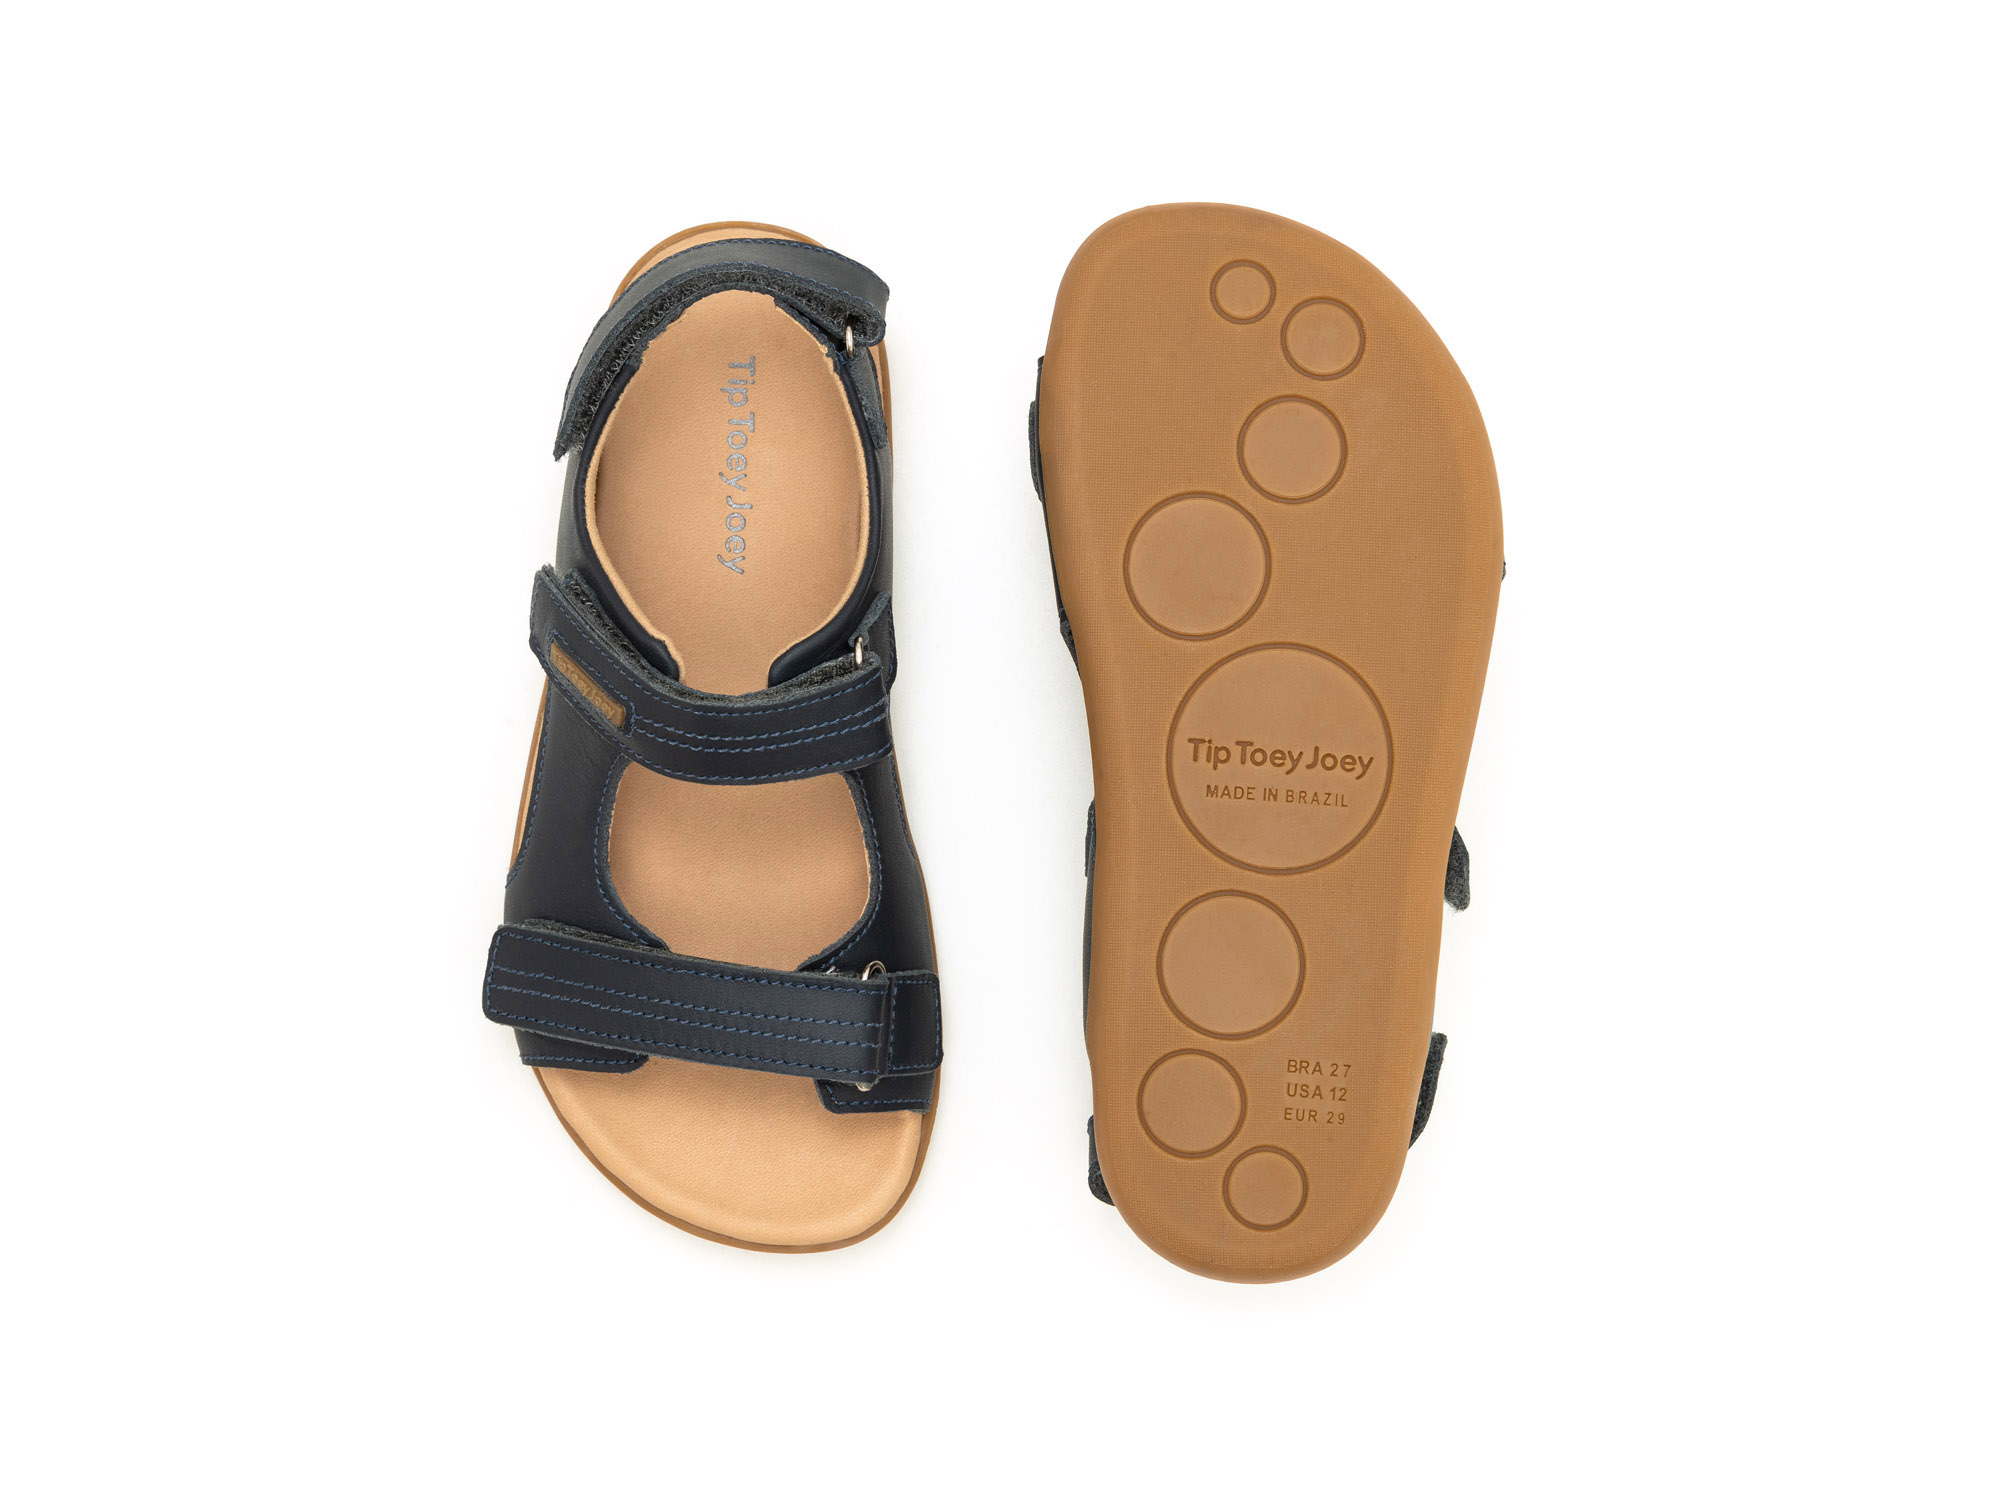 RUN & PLAY Sandals for Boys Little Explorer | Tip Toey Joey - Australia - 2